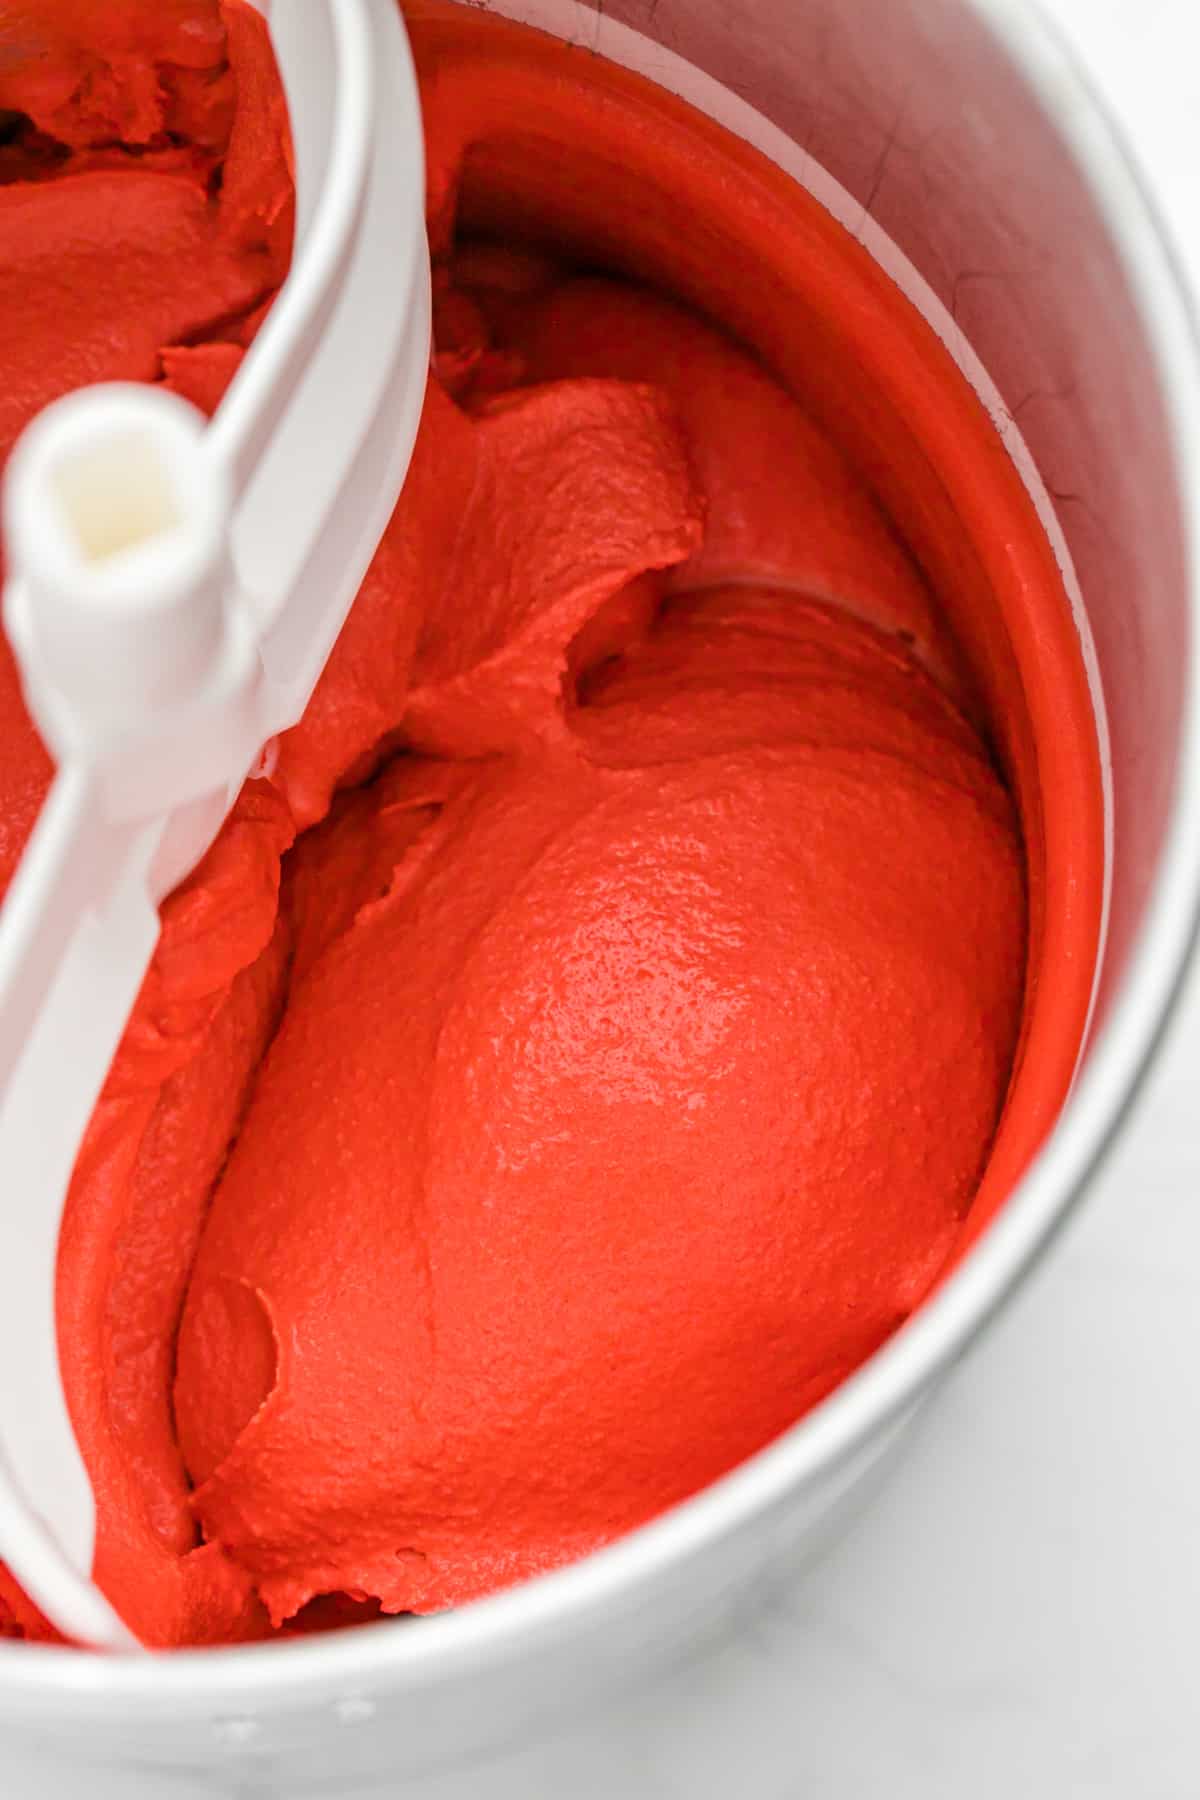 Red velvet ice cream being churned in an ice cream maker